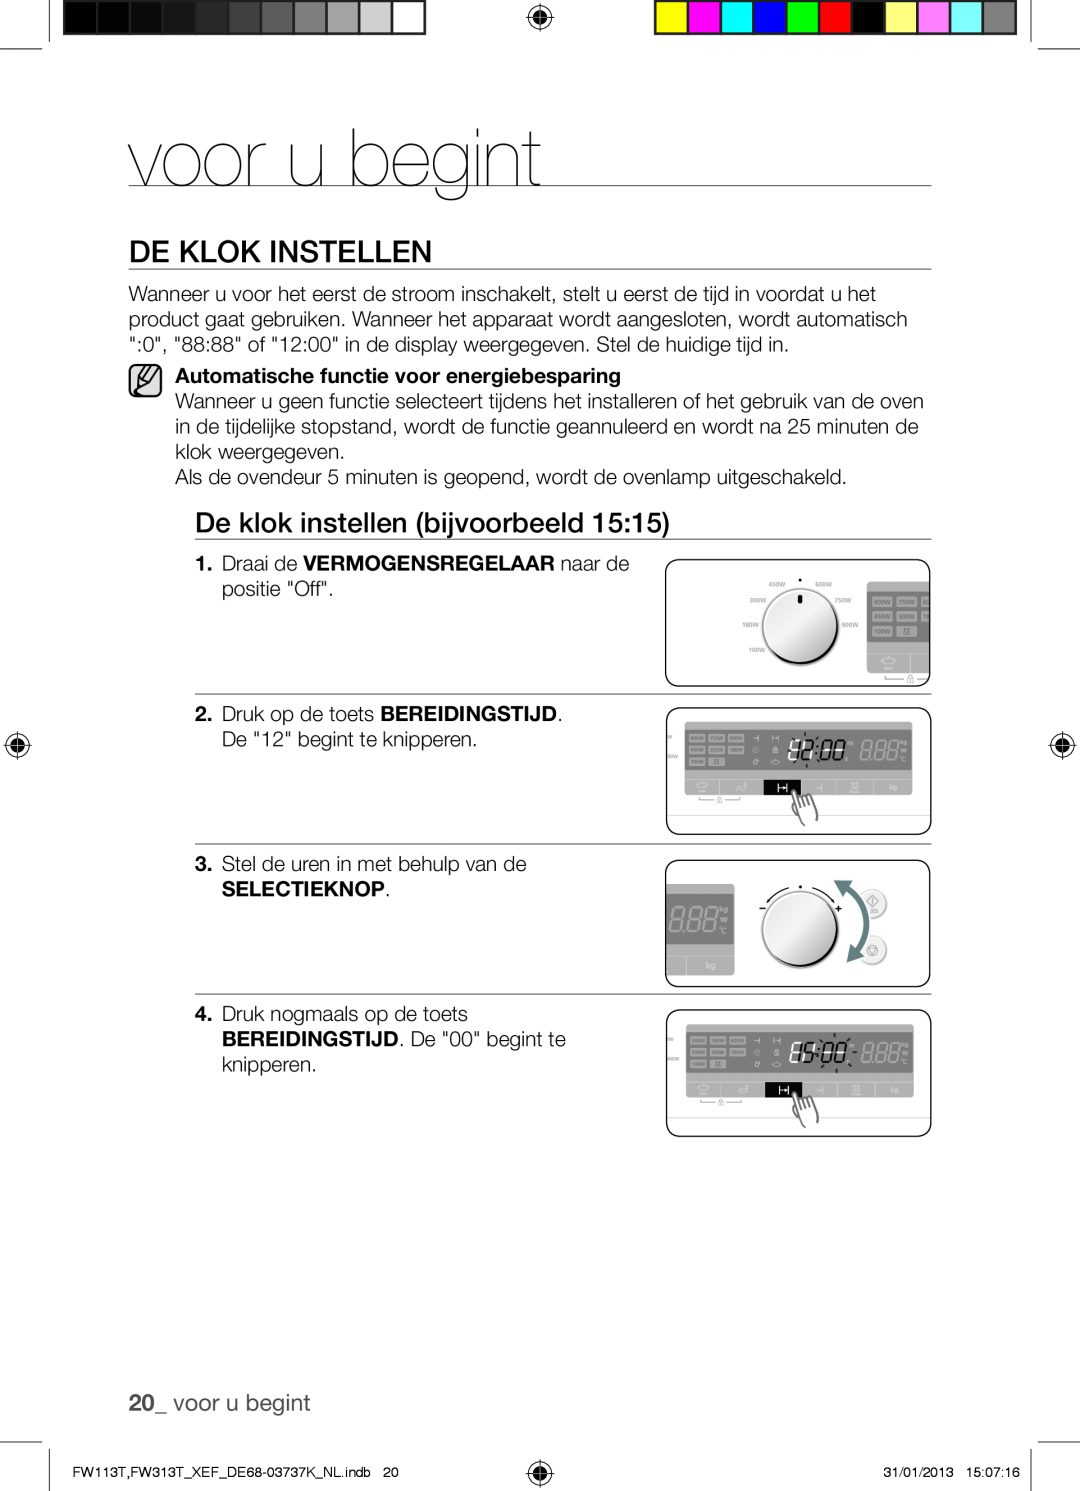 Samsung FW113T002/XEF manual voor u begint, De Klok Instellen 